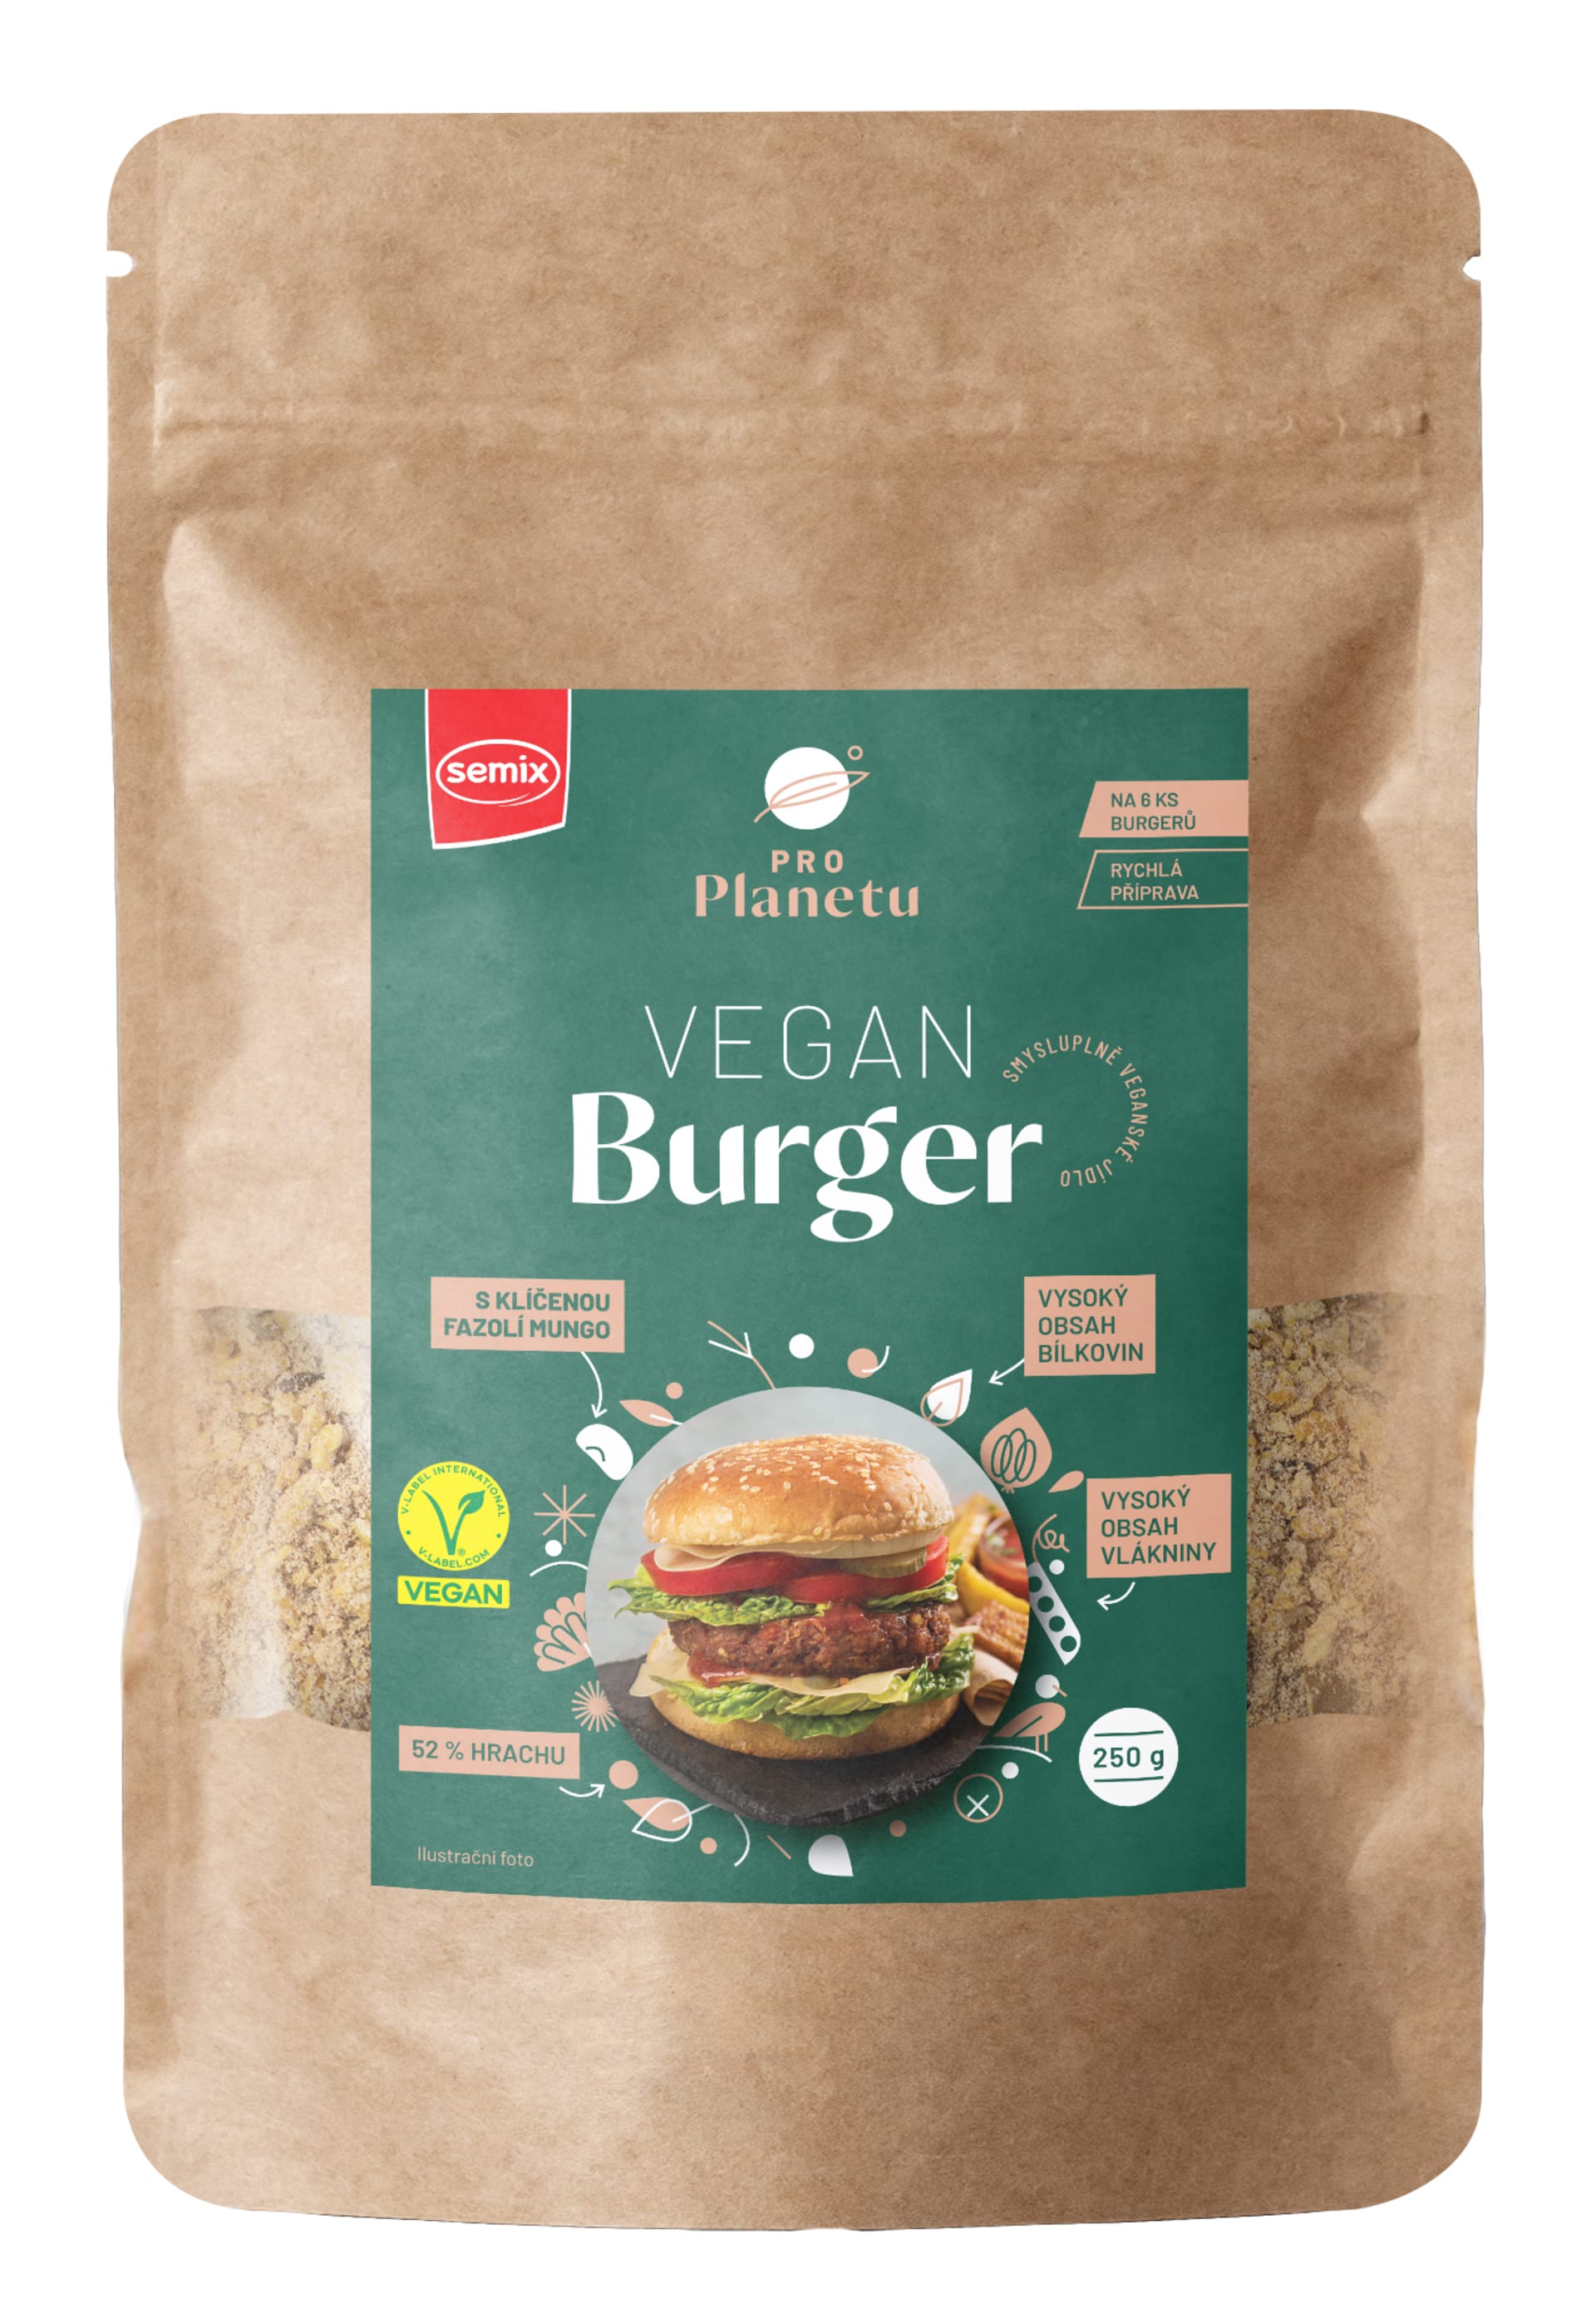 Veganský burger, který nezapomeňte vzít na grilovačku